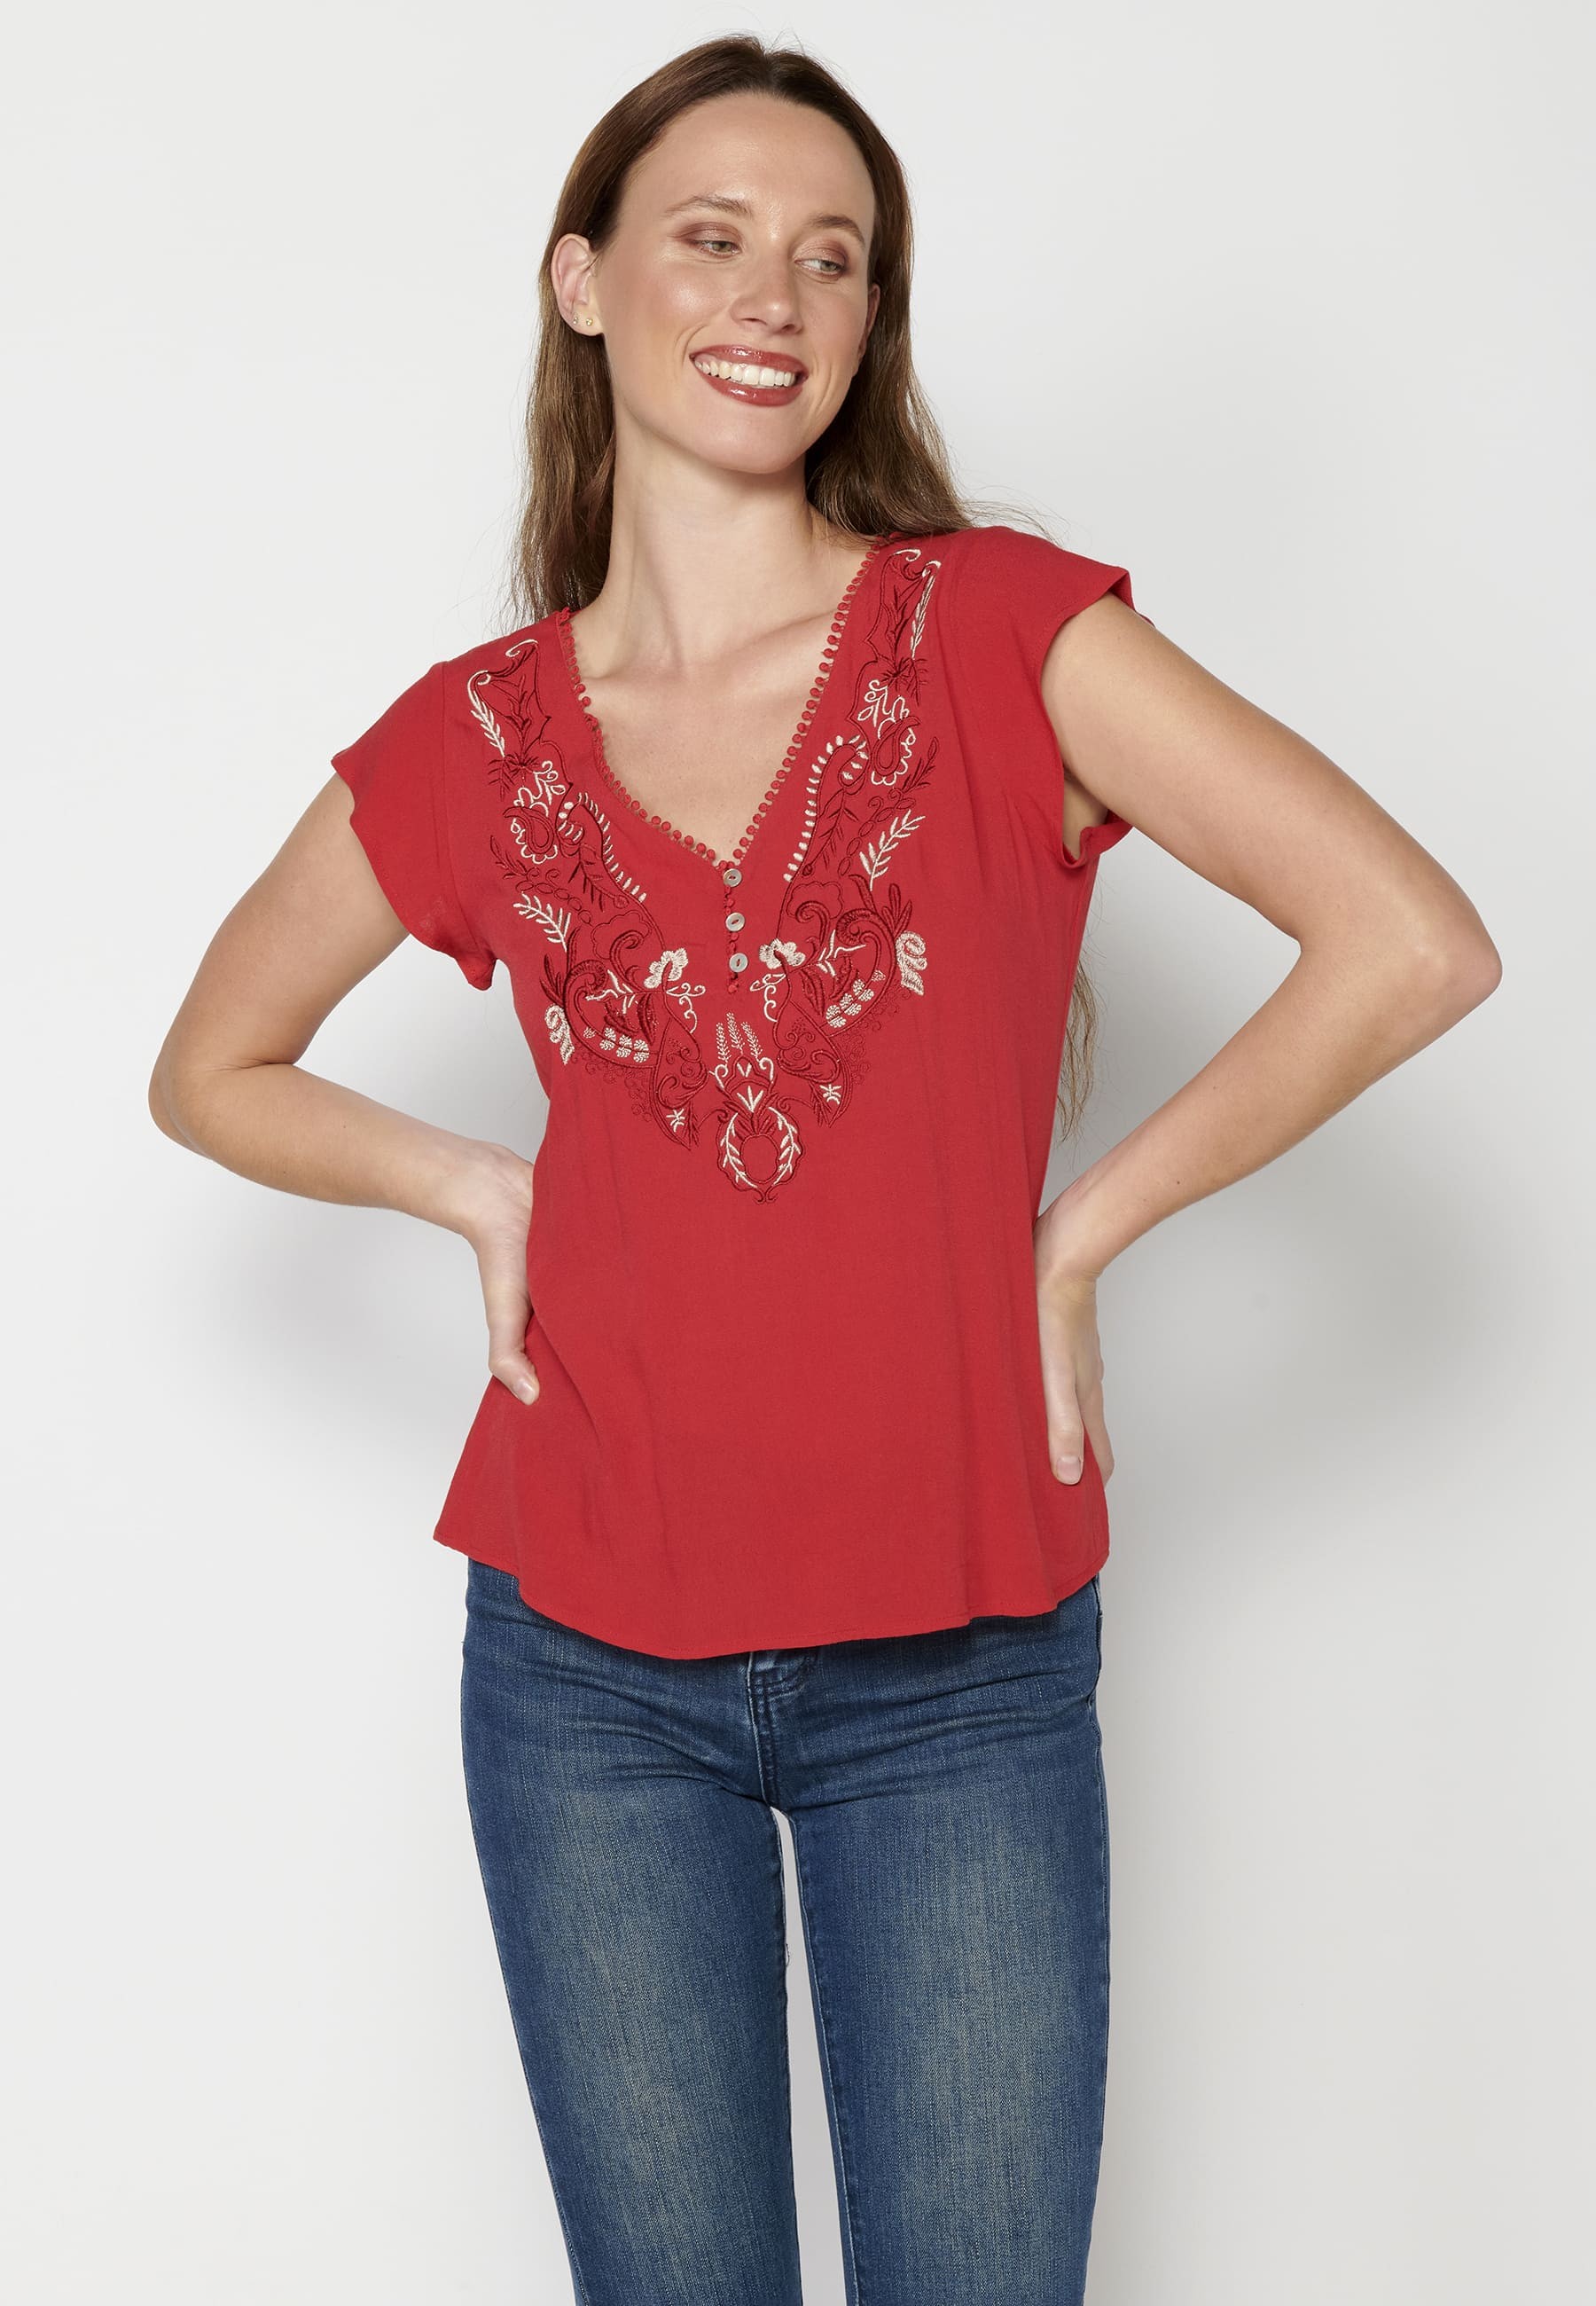 Kurzärmlige Bluse mit floralen Details in roter Farbe für Damen